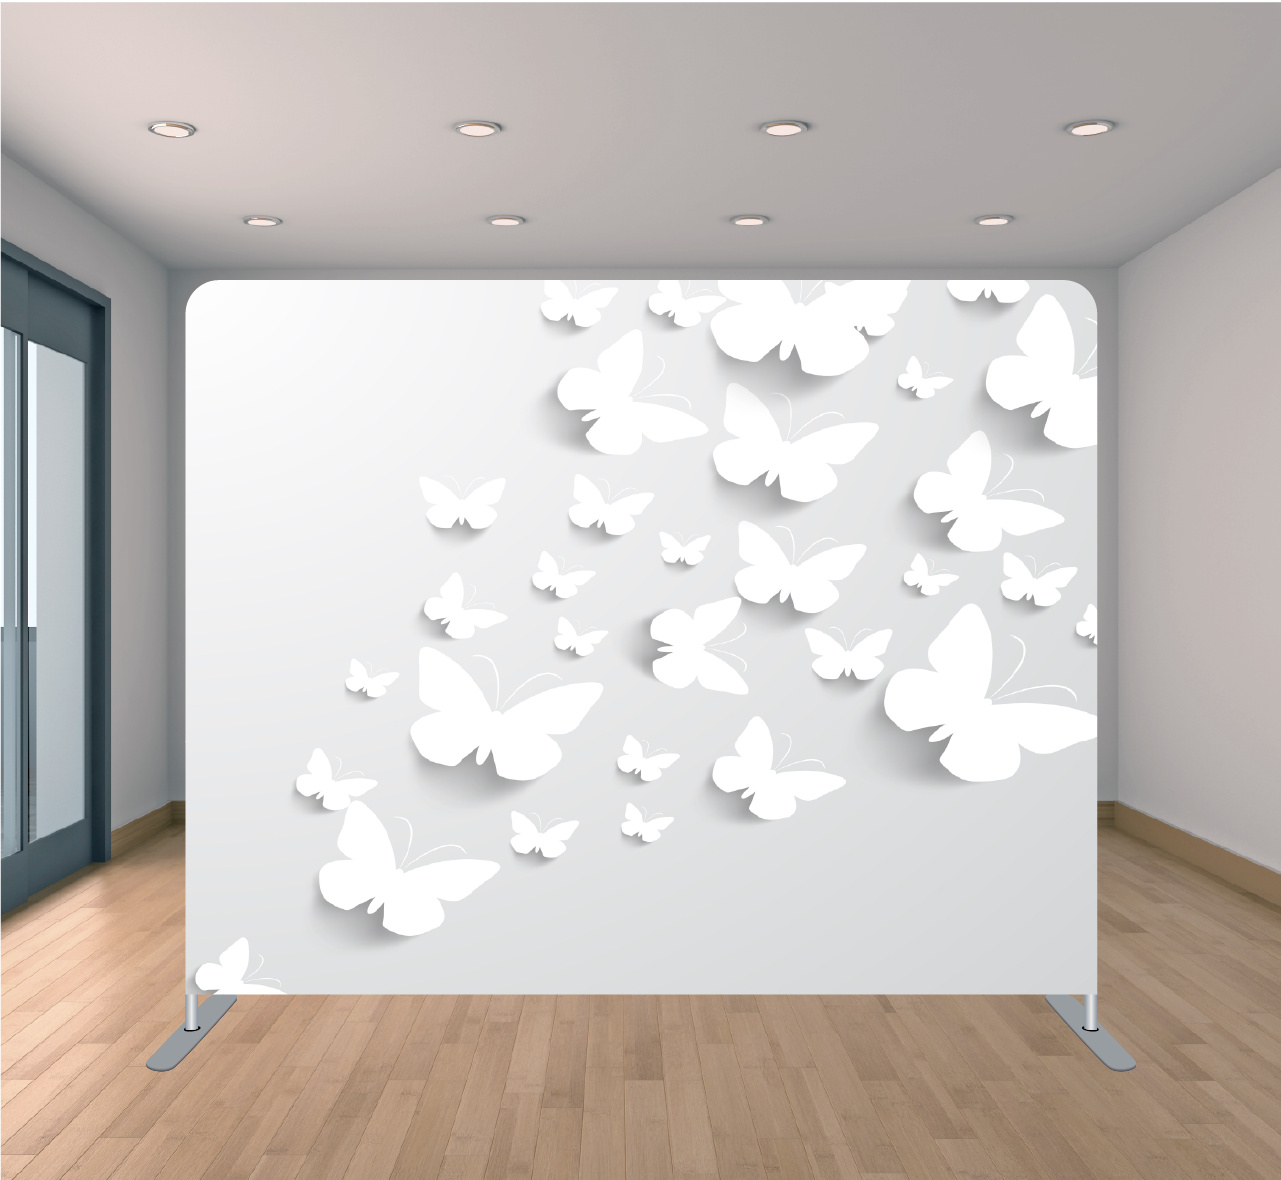 8X8ft Pillowcase Tension Backdrop- White Butterflies